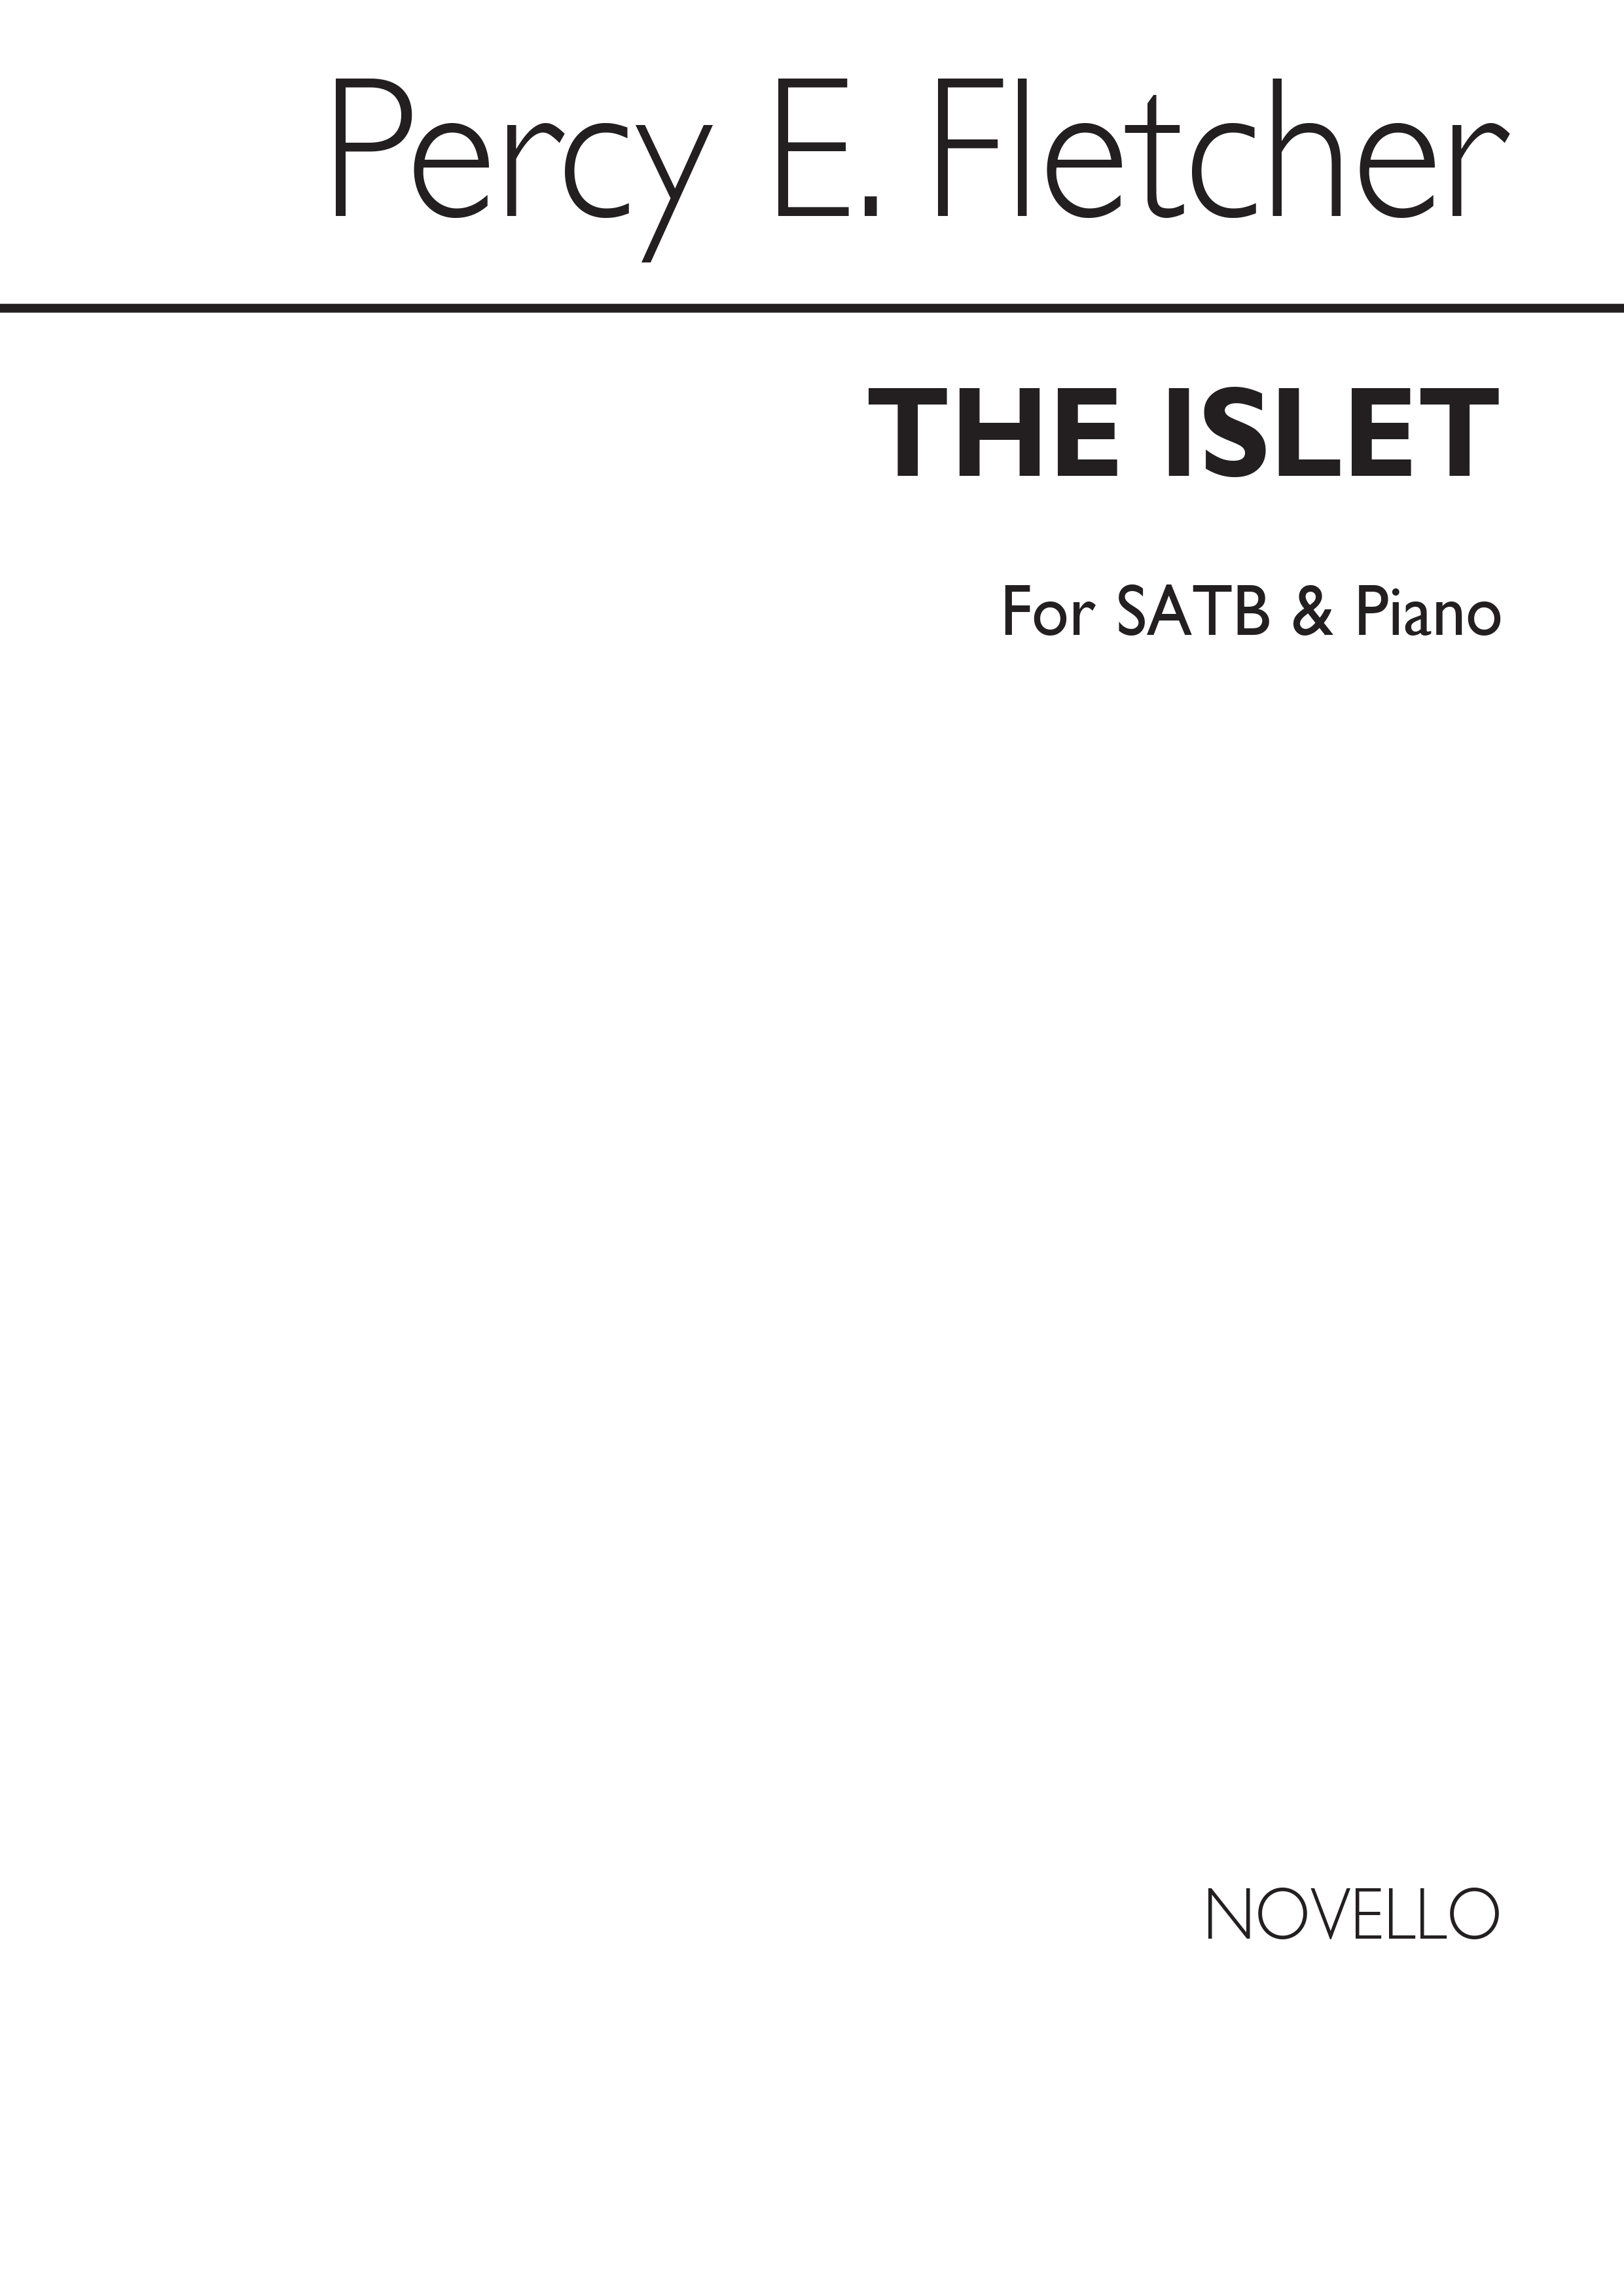 Percy E. Fletcher: The Islet: SATB: Vocal Score